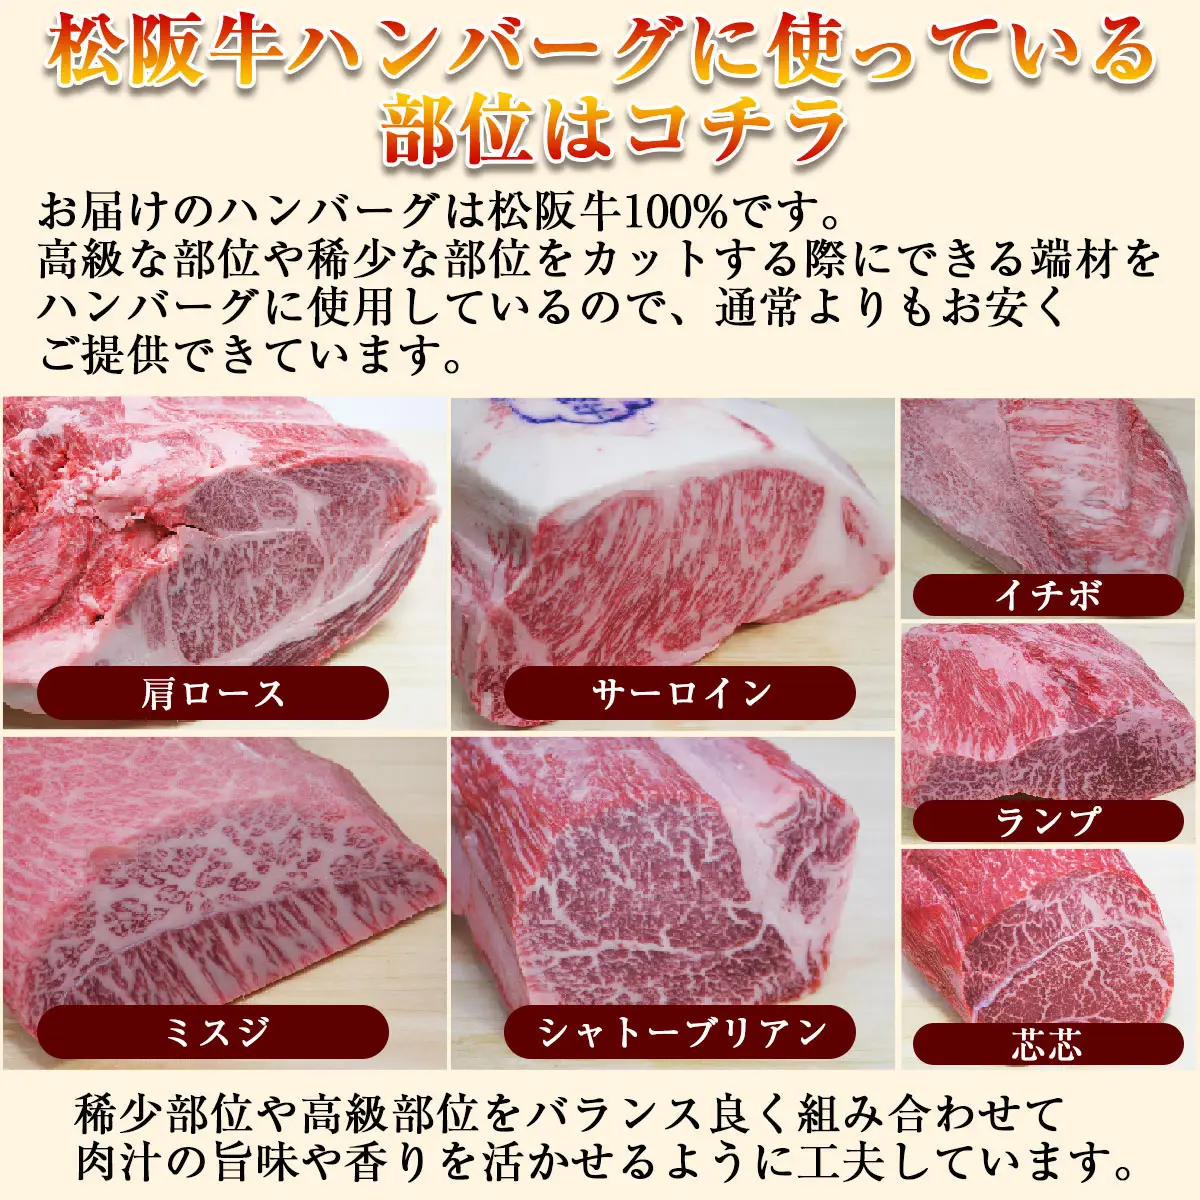 時間指定不可 三重 松阪牛 赤身ステーキ モモ 120g×2